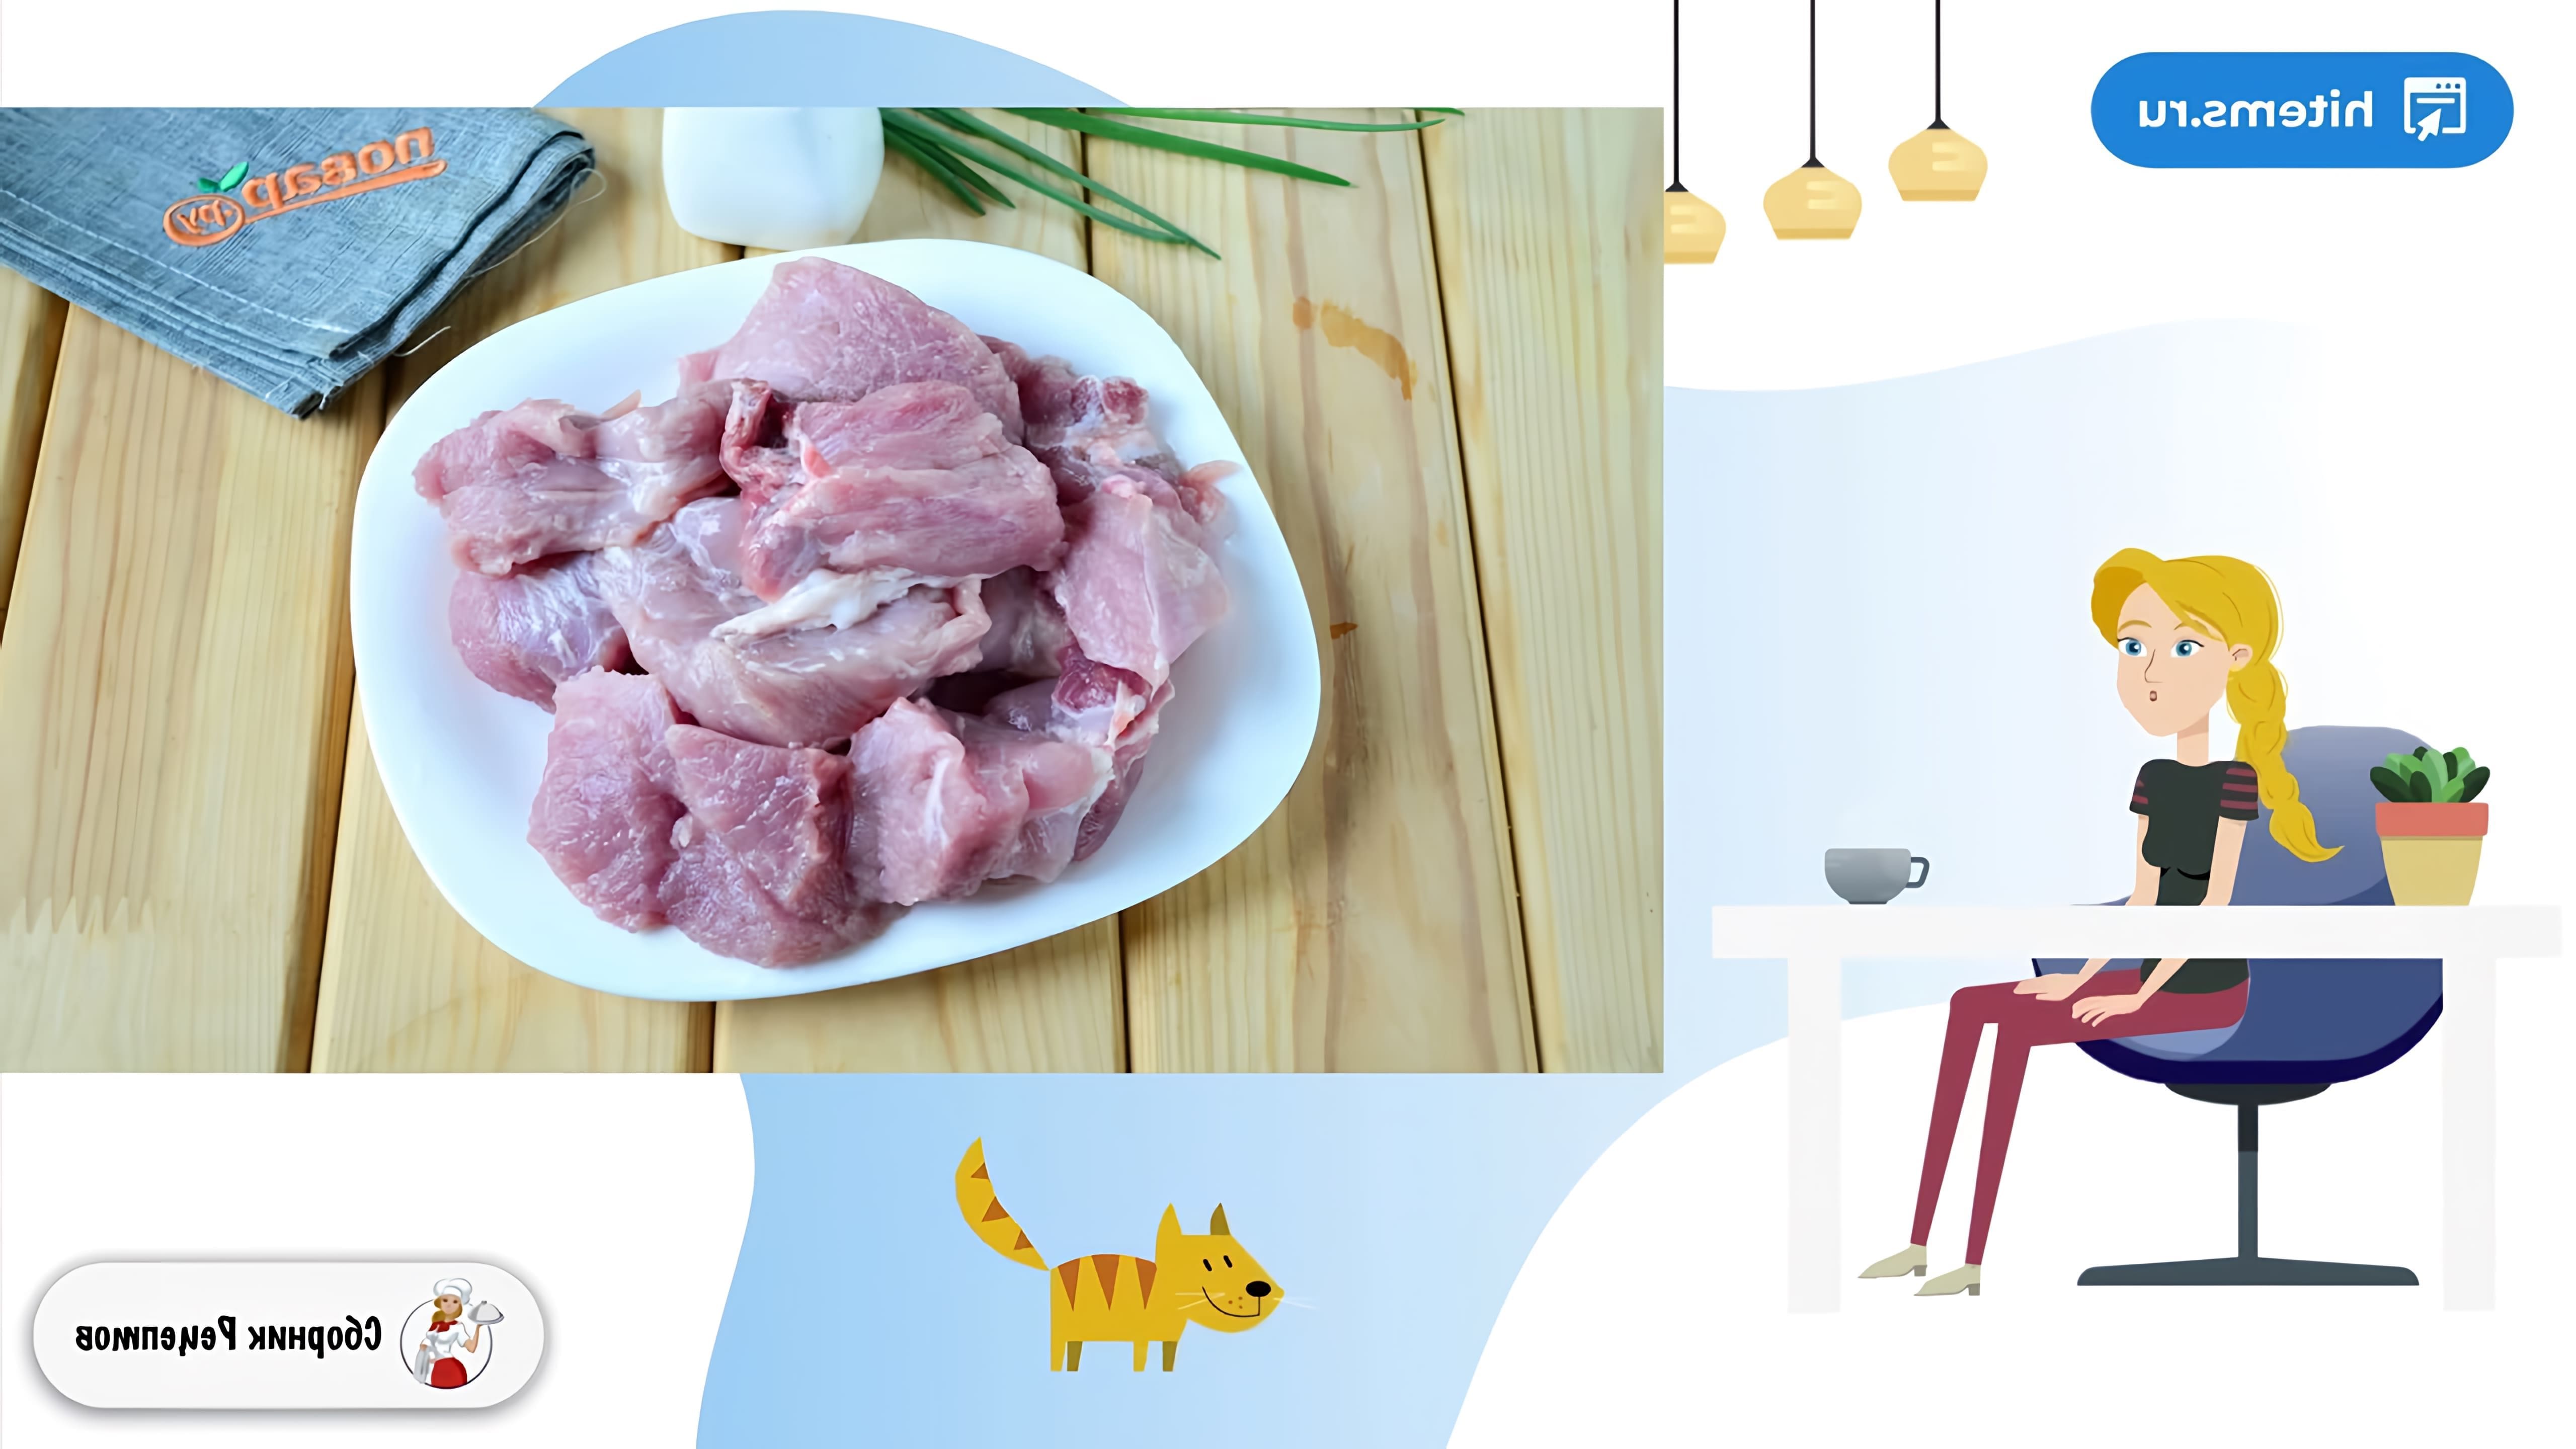 В этом видео демонстрируется рецепт приготовления шашлыка из свиной лопатки